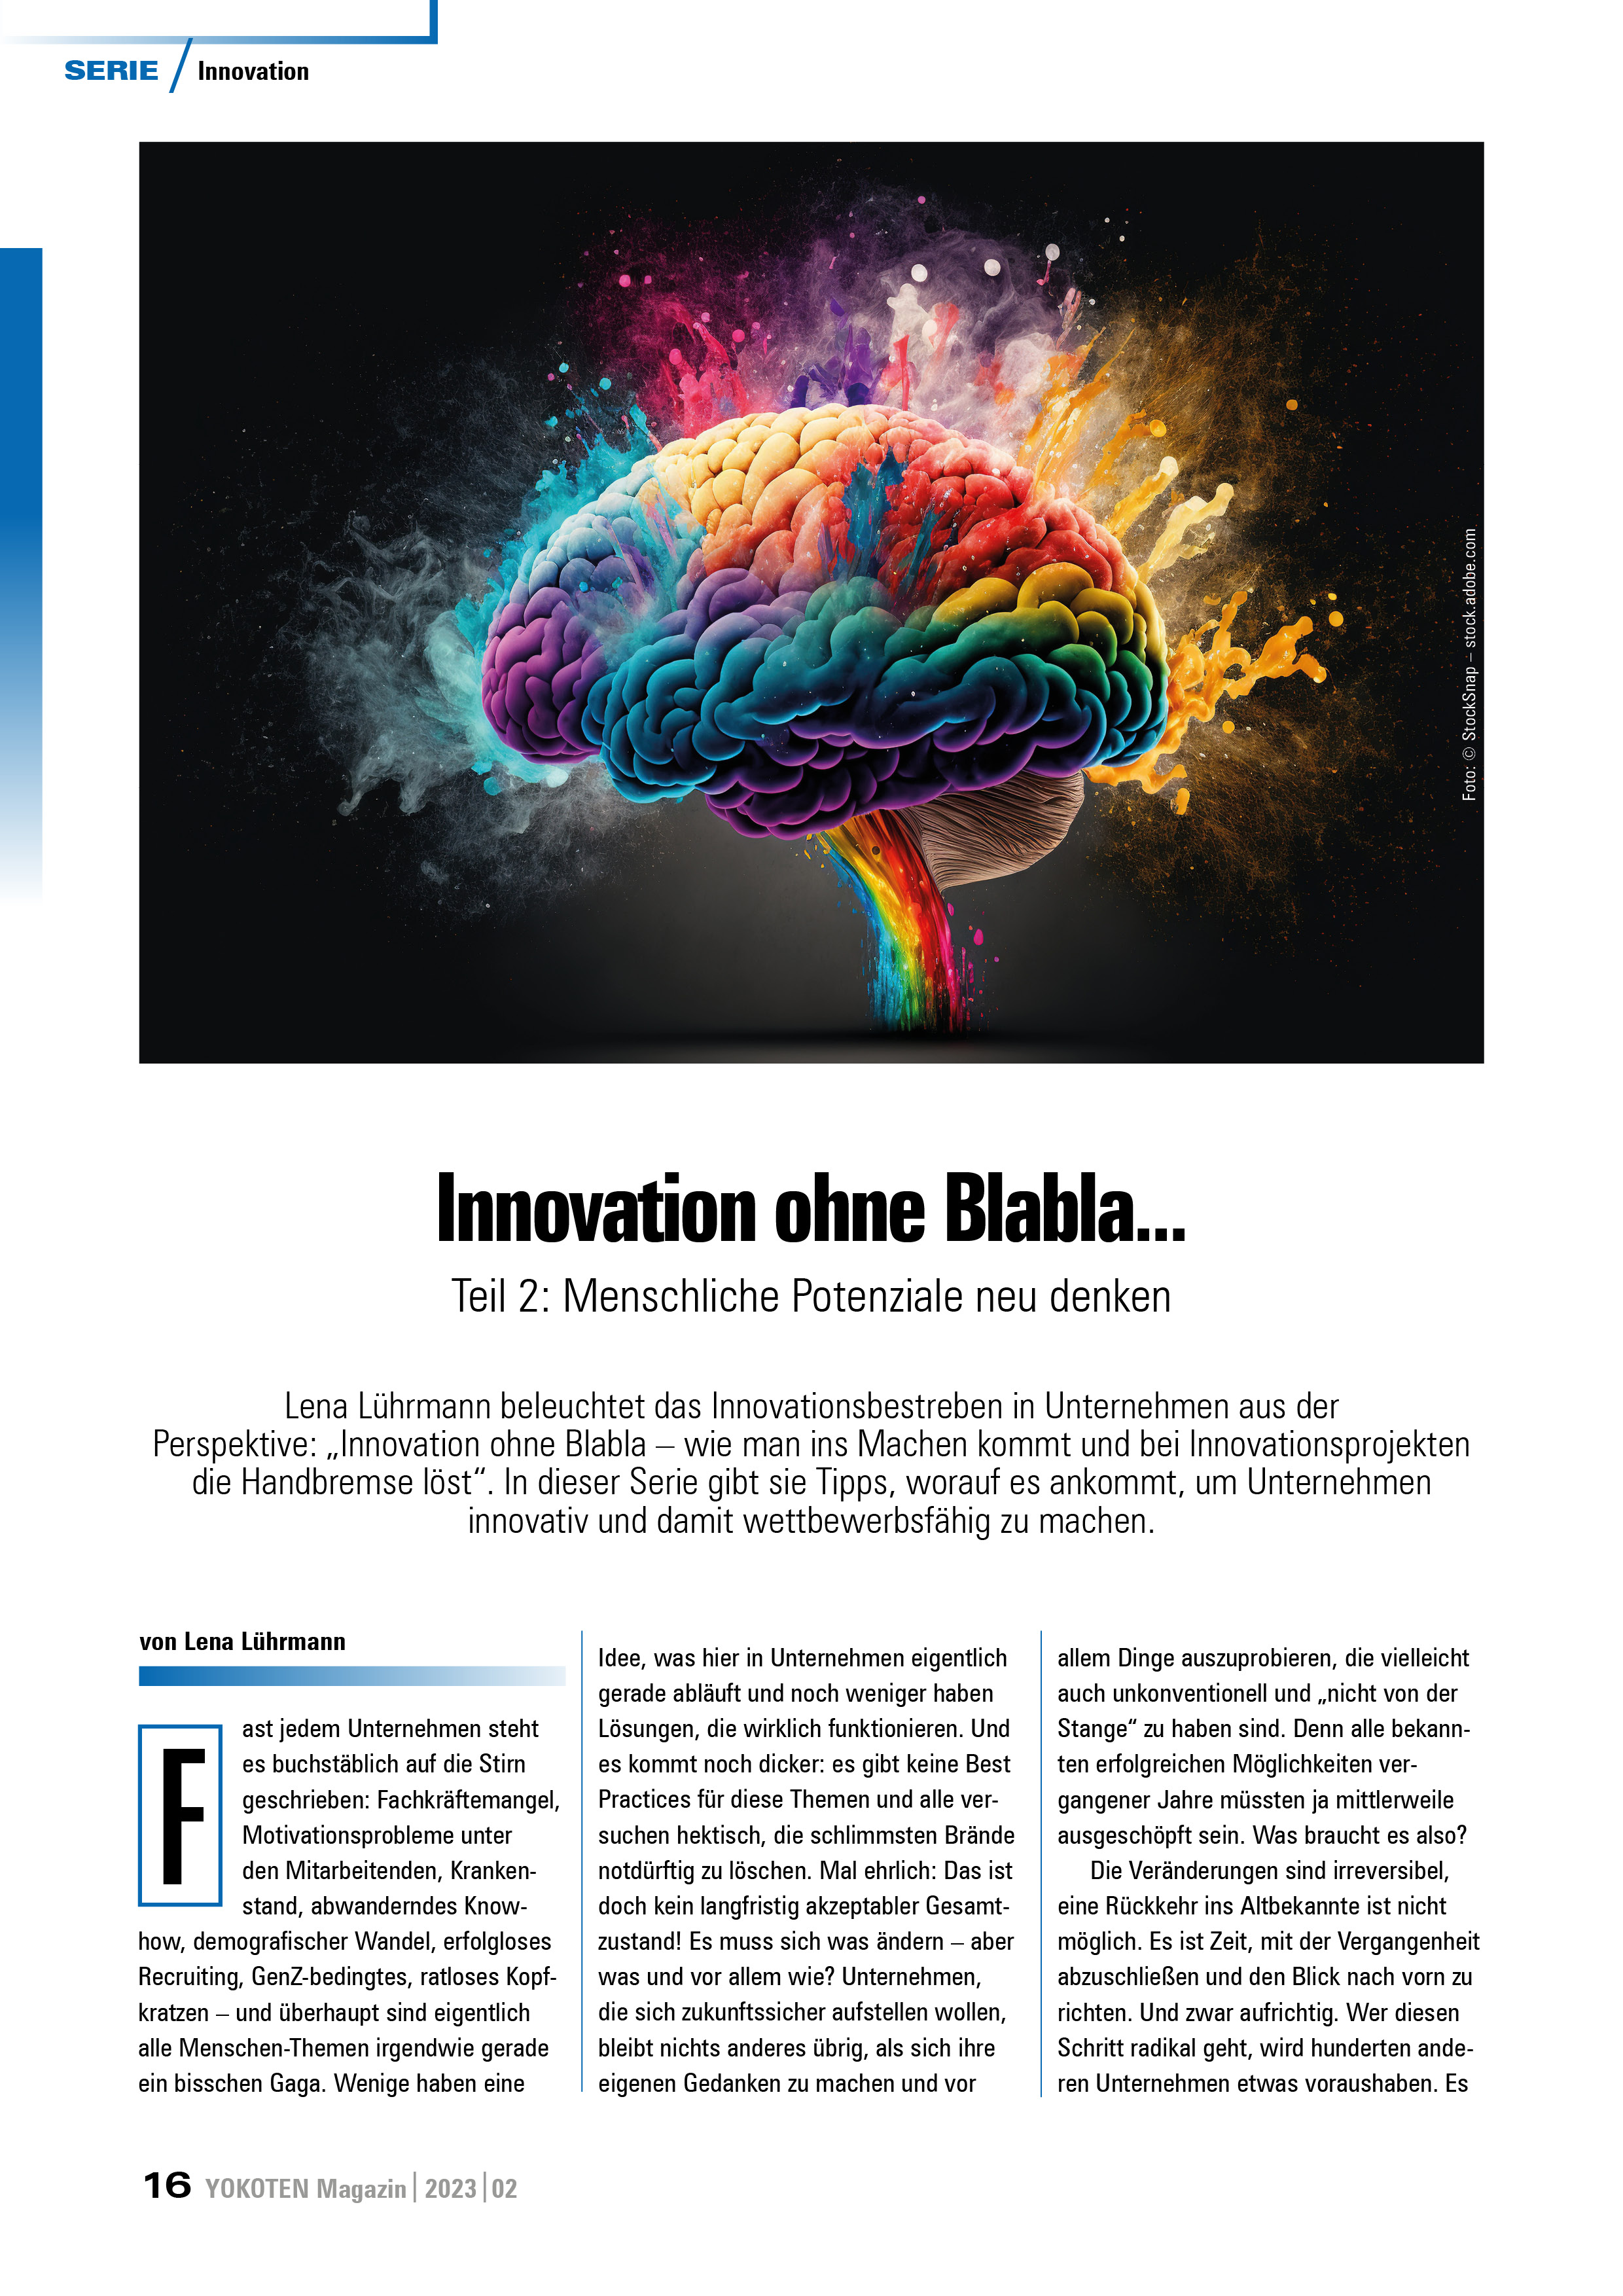 Innovation ohne Blabla... - Teil 2 - Artikel aus Fachmagazin YOKOTEN 2023-02